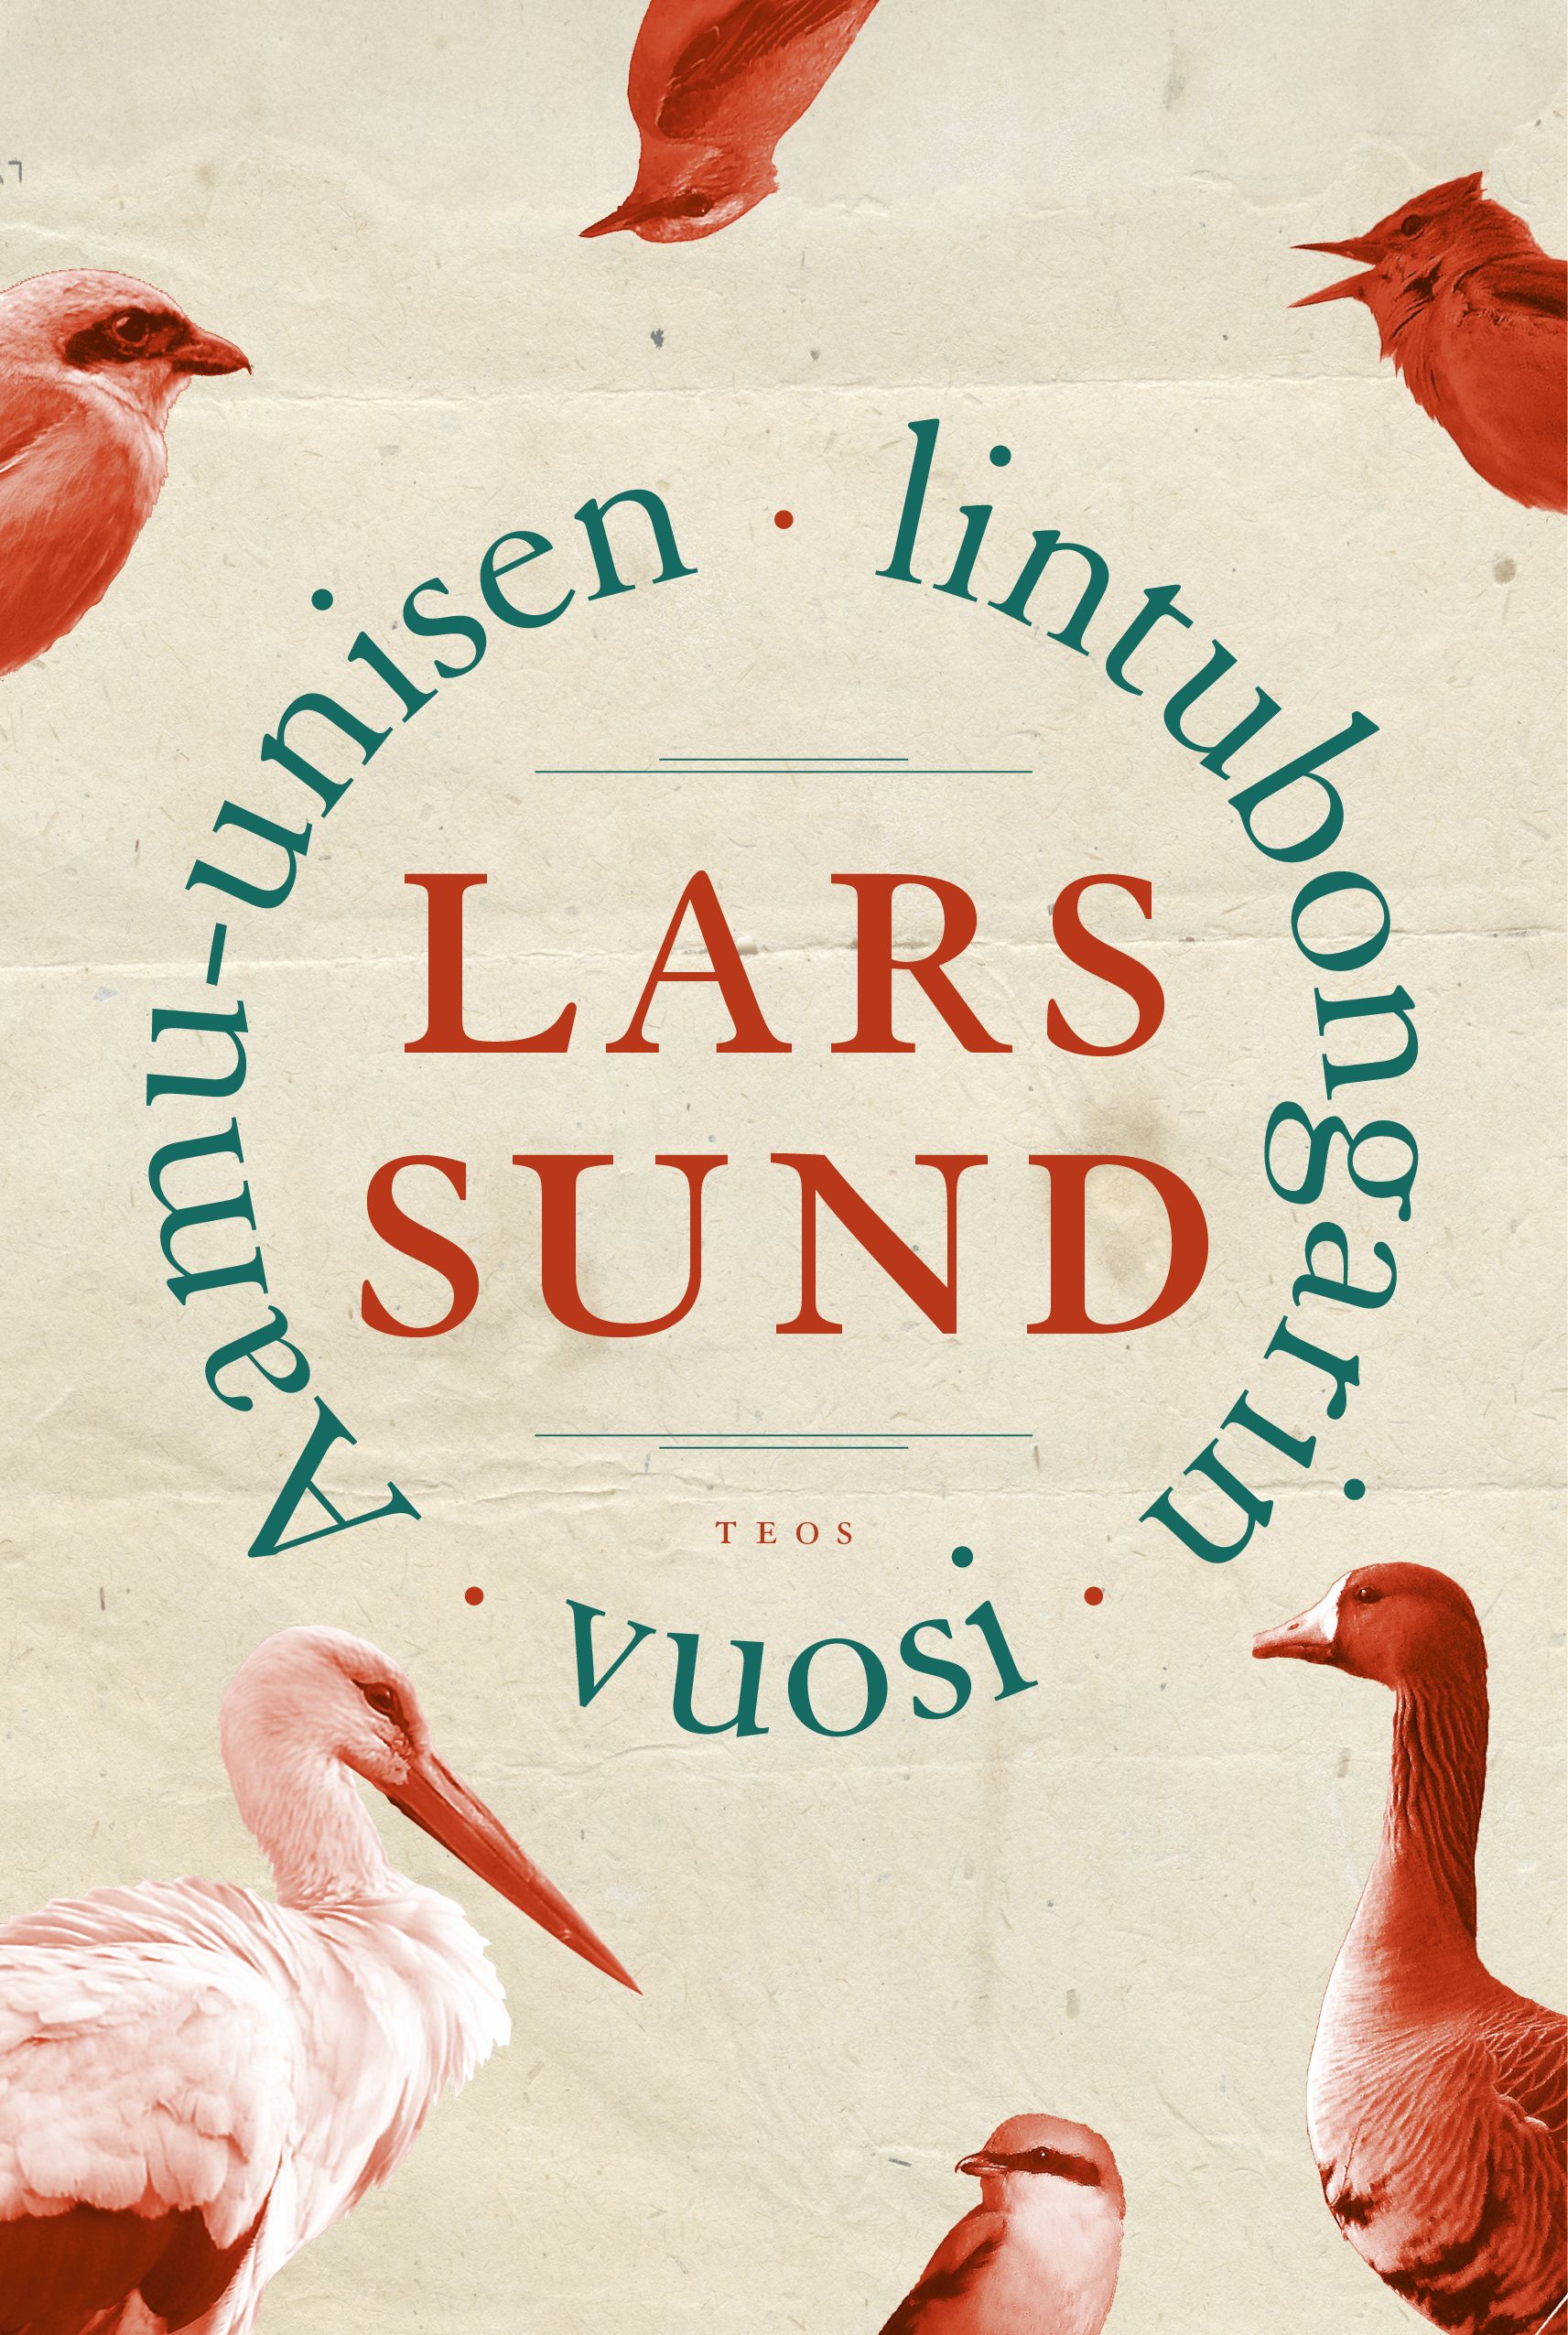 Kirjailijan Lars Sund uusi kirja Aamu-unisen lintubongarin vuosi (UUSI)